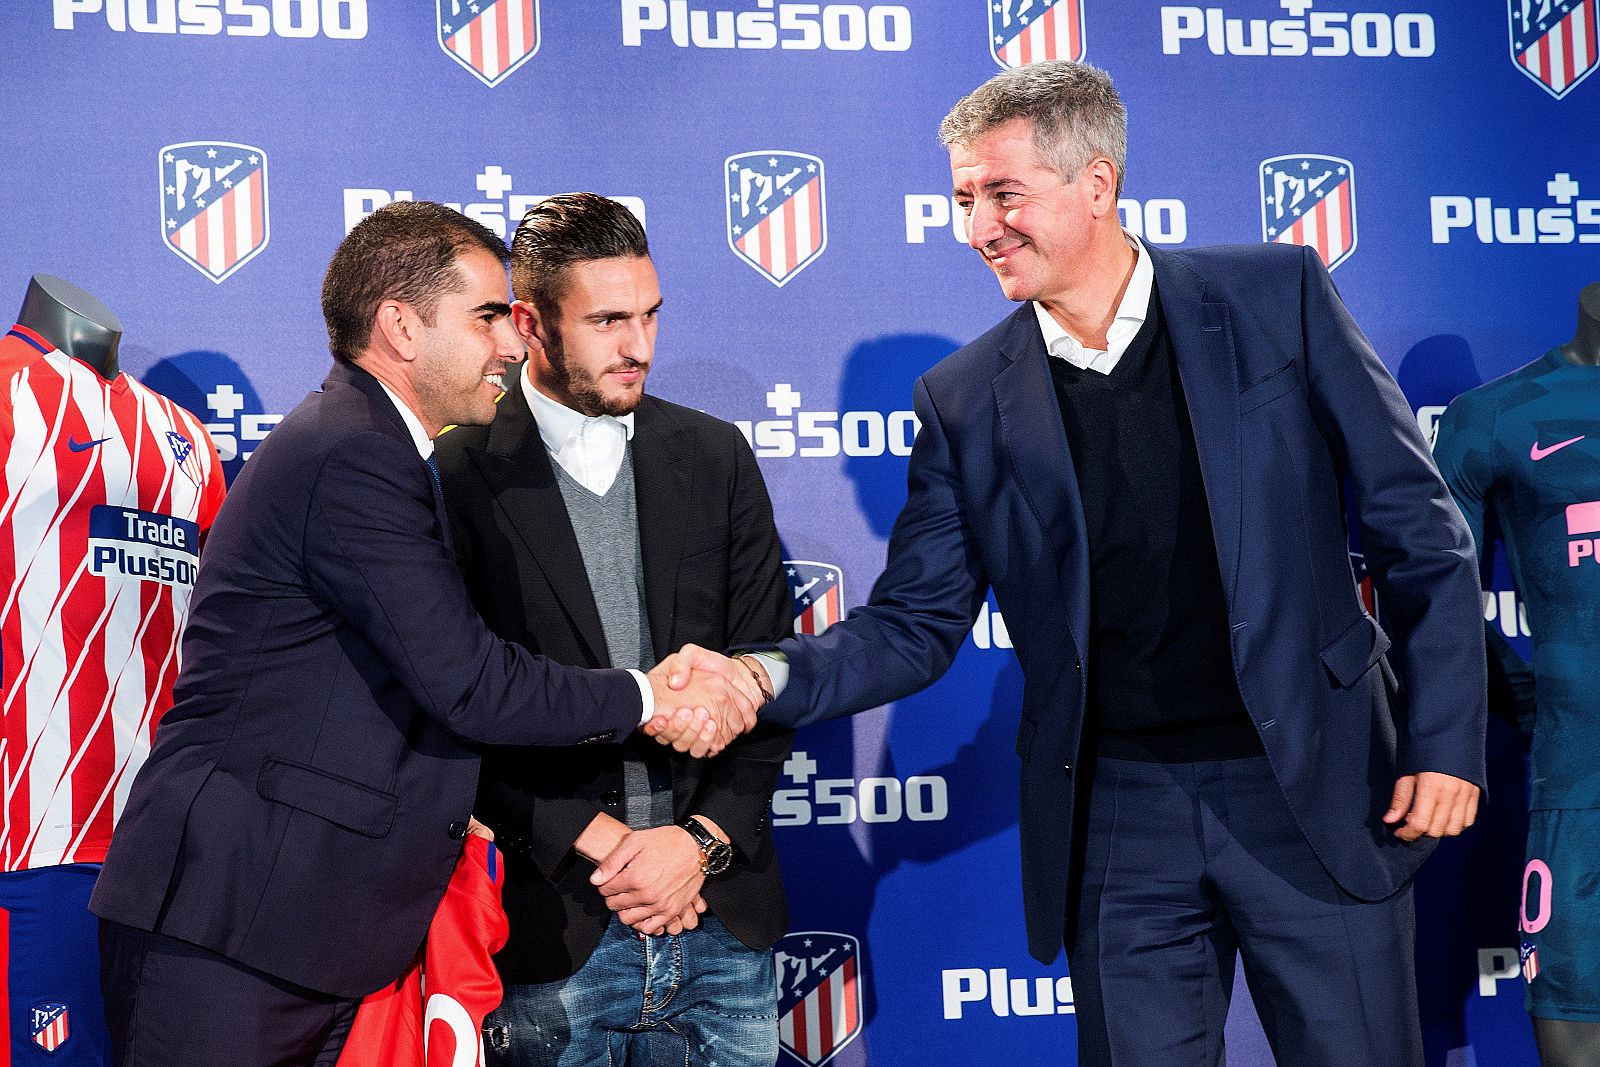 El CEO de Plus500, Asaf Elimelech, y el consejero delegado del Atlético de Madrid, Miguel Ángel Gil, en un apretón de manos durante la firma de ampliación de patrocinio entre el Atlético de Madrid y Plus500.